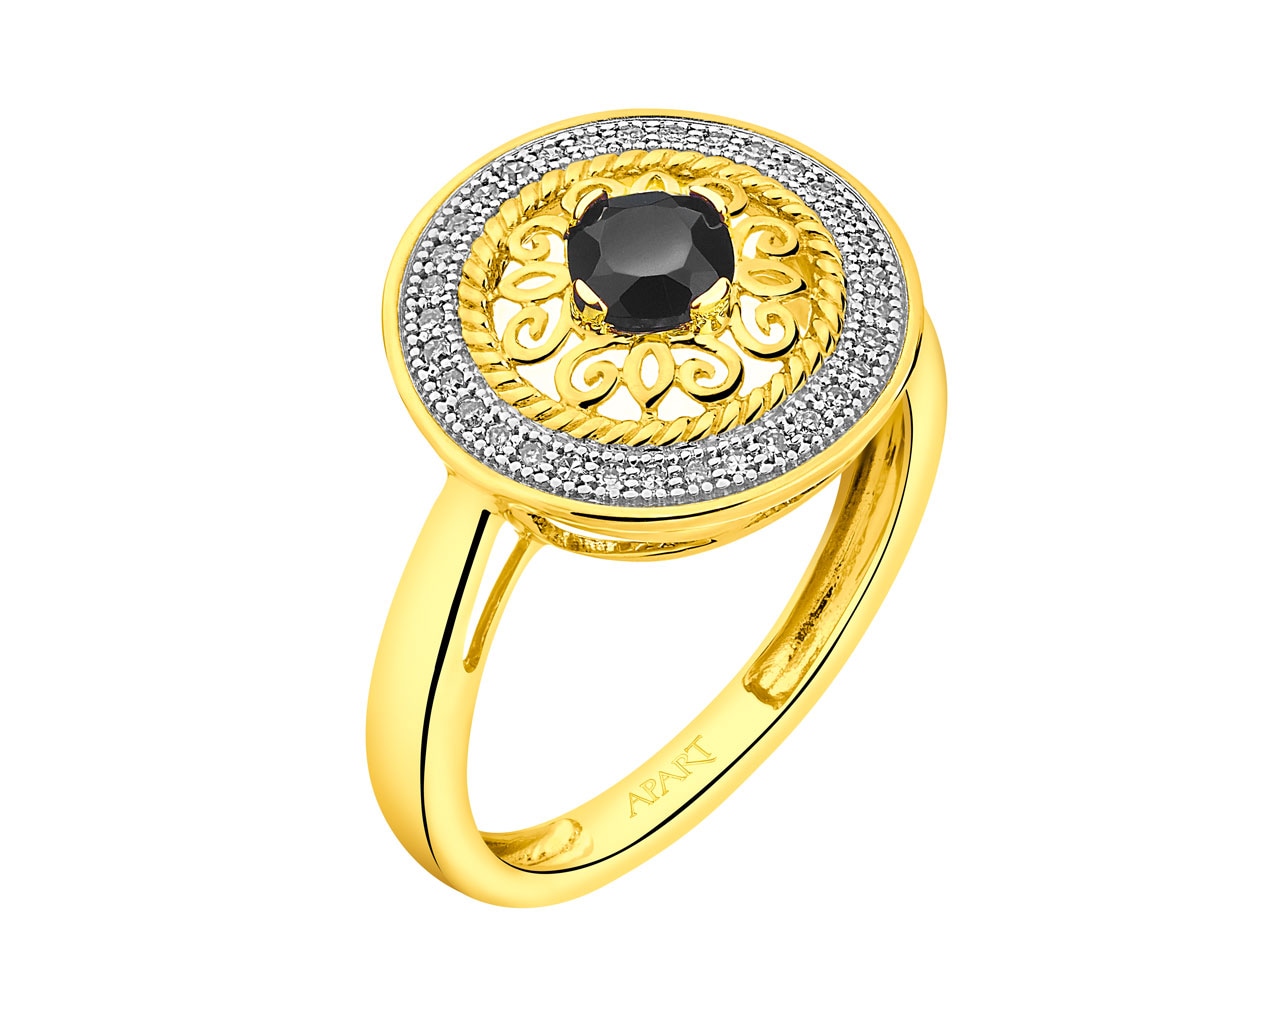 Zlatý prsten s diamanty a onyxem - rozeta 0,09 ct - ryzost 585